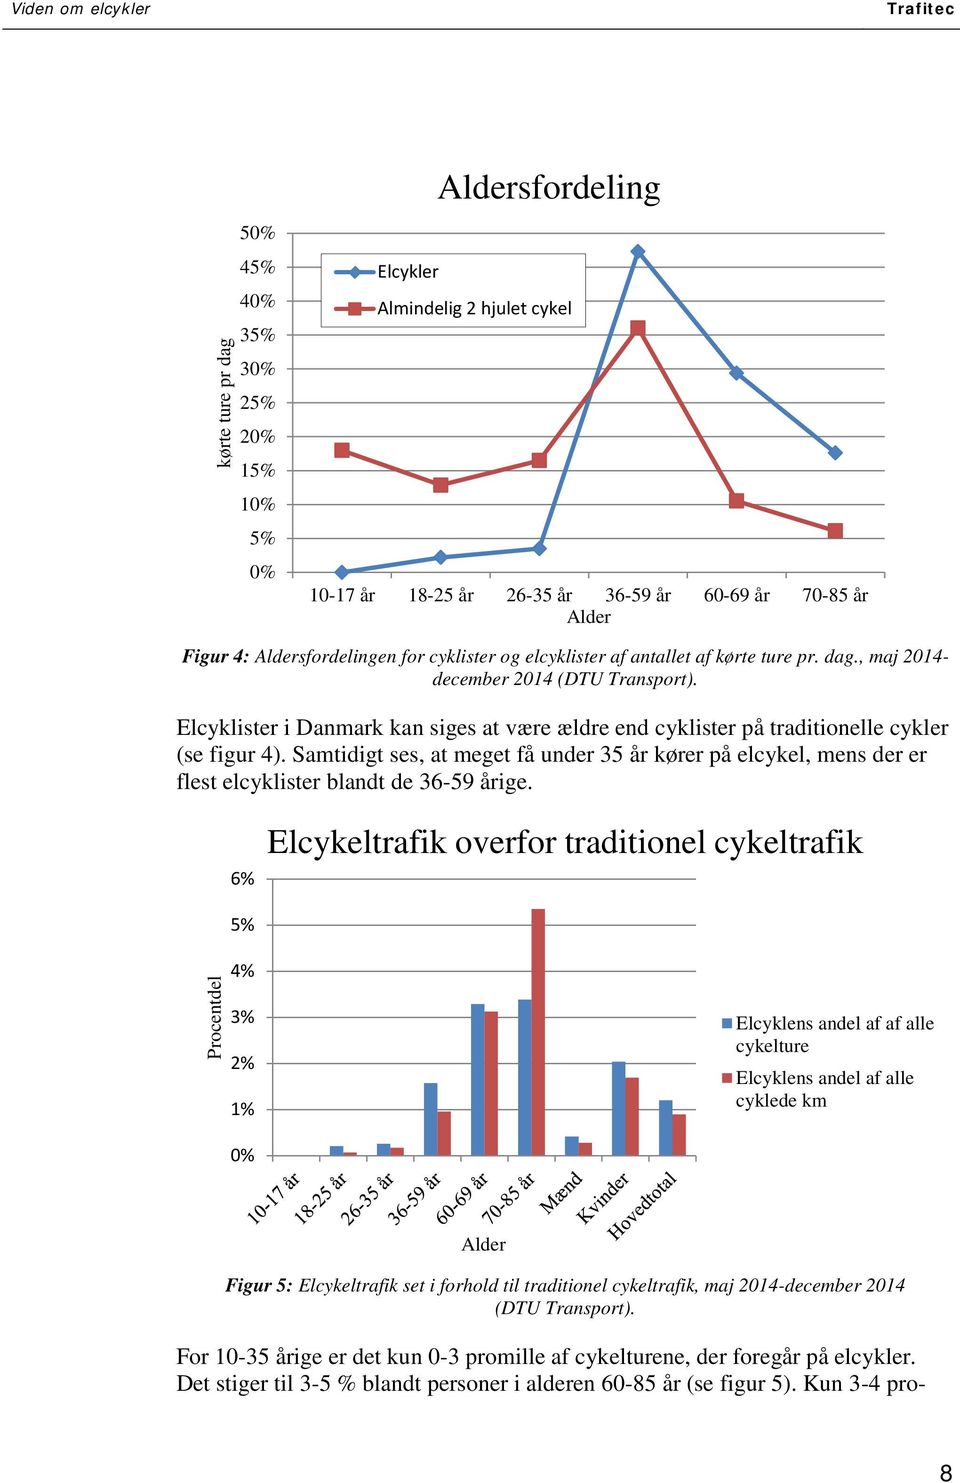 Elcyklister i Danmark kan siges at være ældre end cyklister på traditionelle cykler (se figur 4).